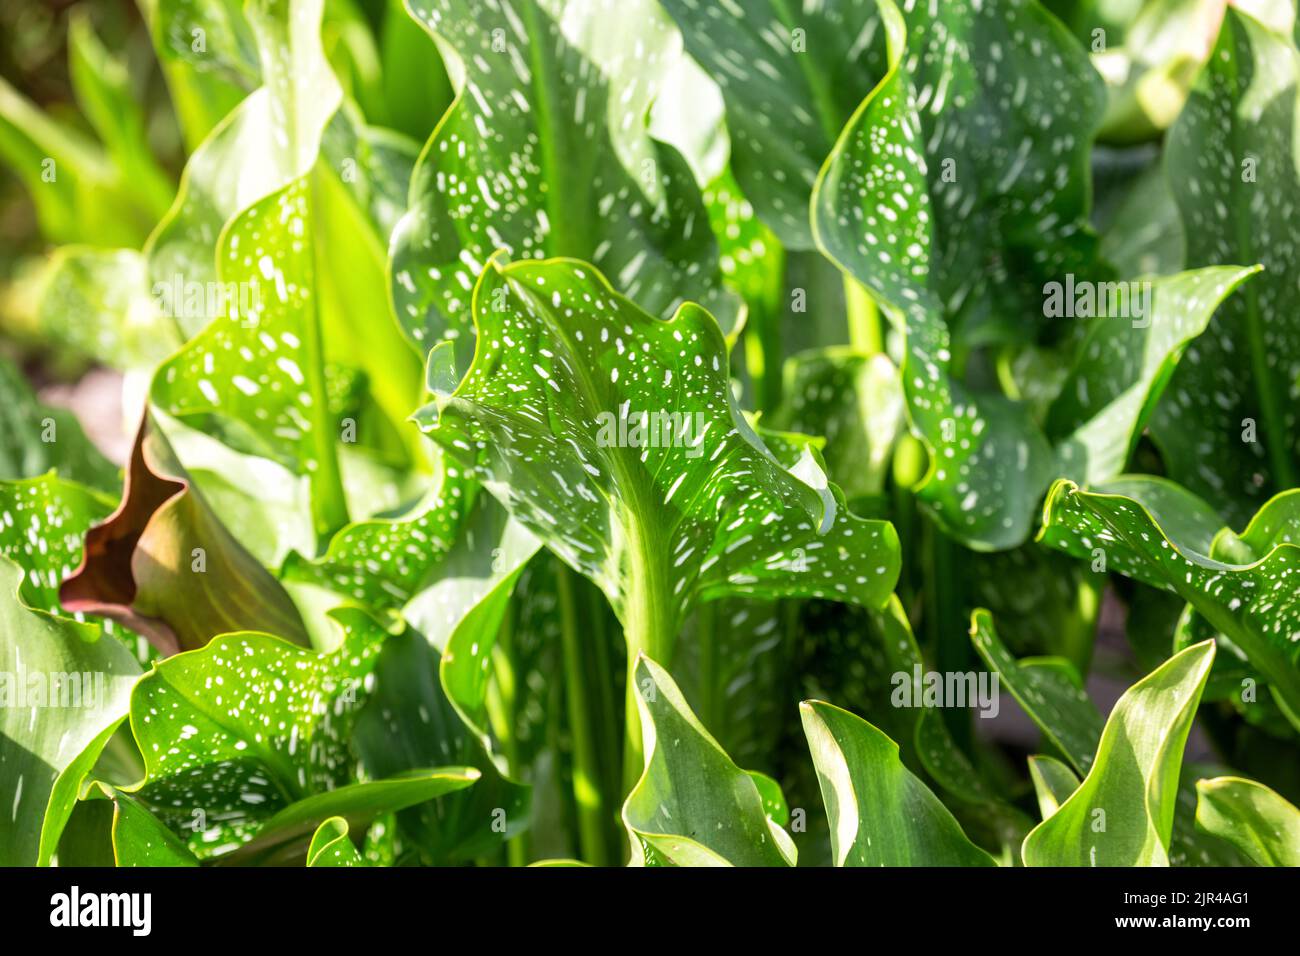 Pianta ornamentale Zantedeschia con grandi foglie verdi con macchie bianche Foto Stock